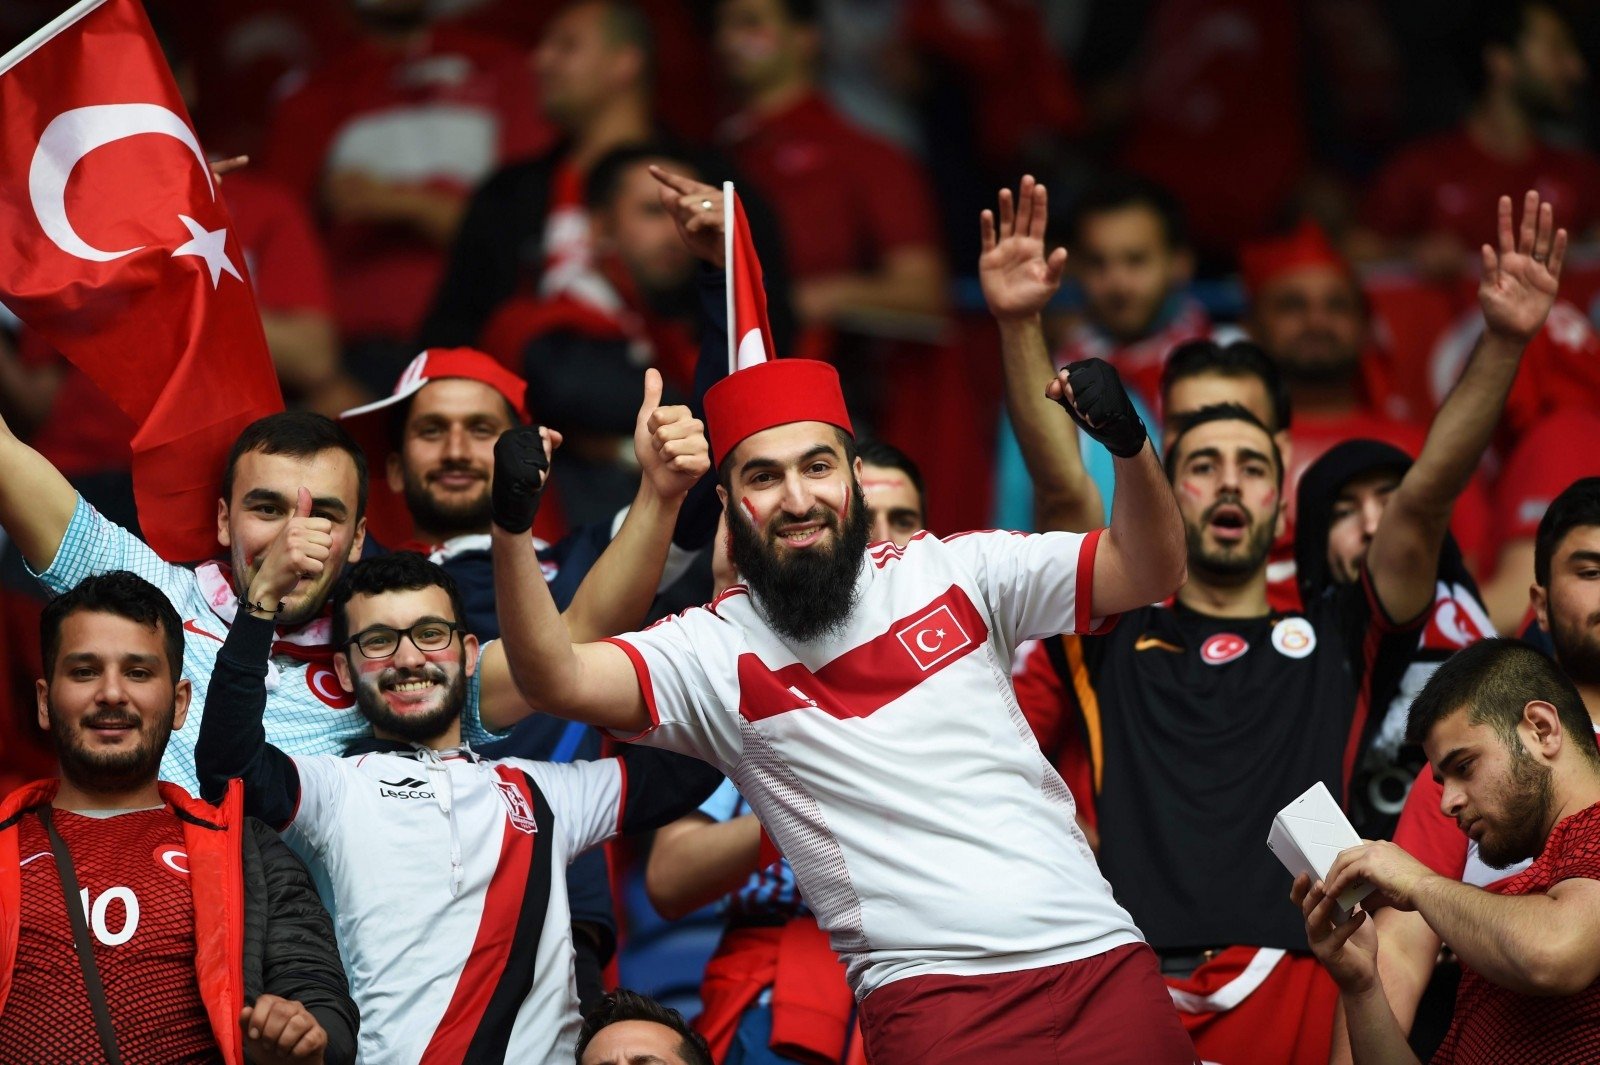 Много турков. Турки. Турецкие фанаты. Турецкие футбольные болельщики. Турция люди.